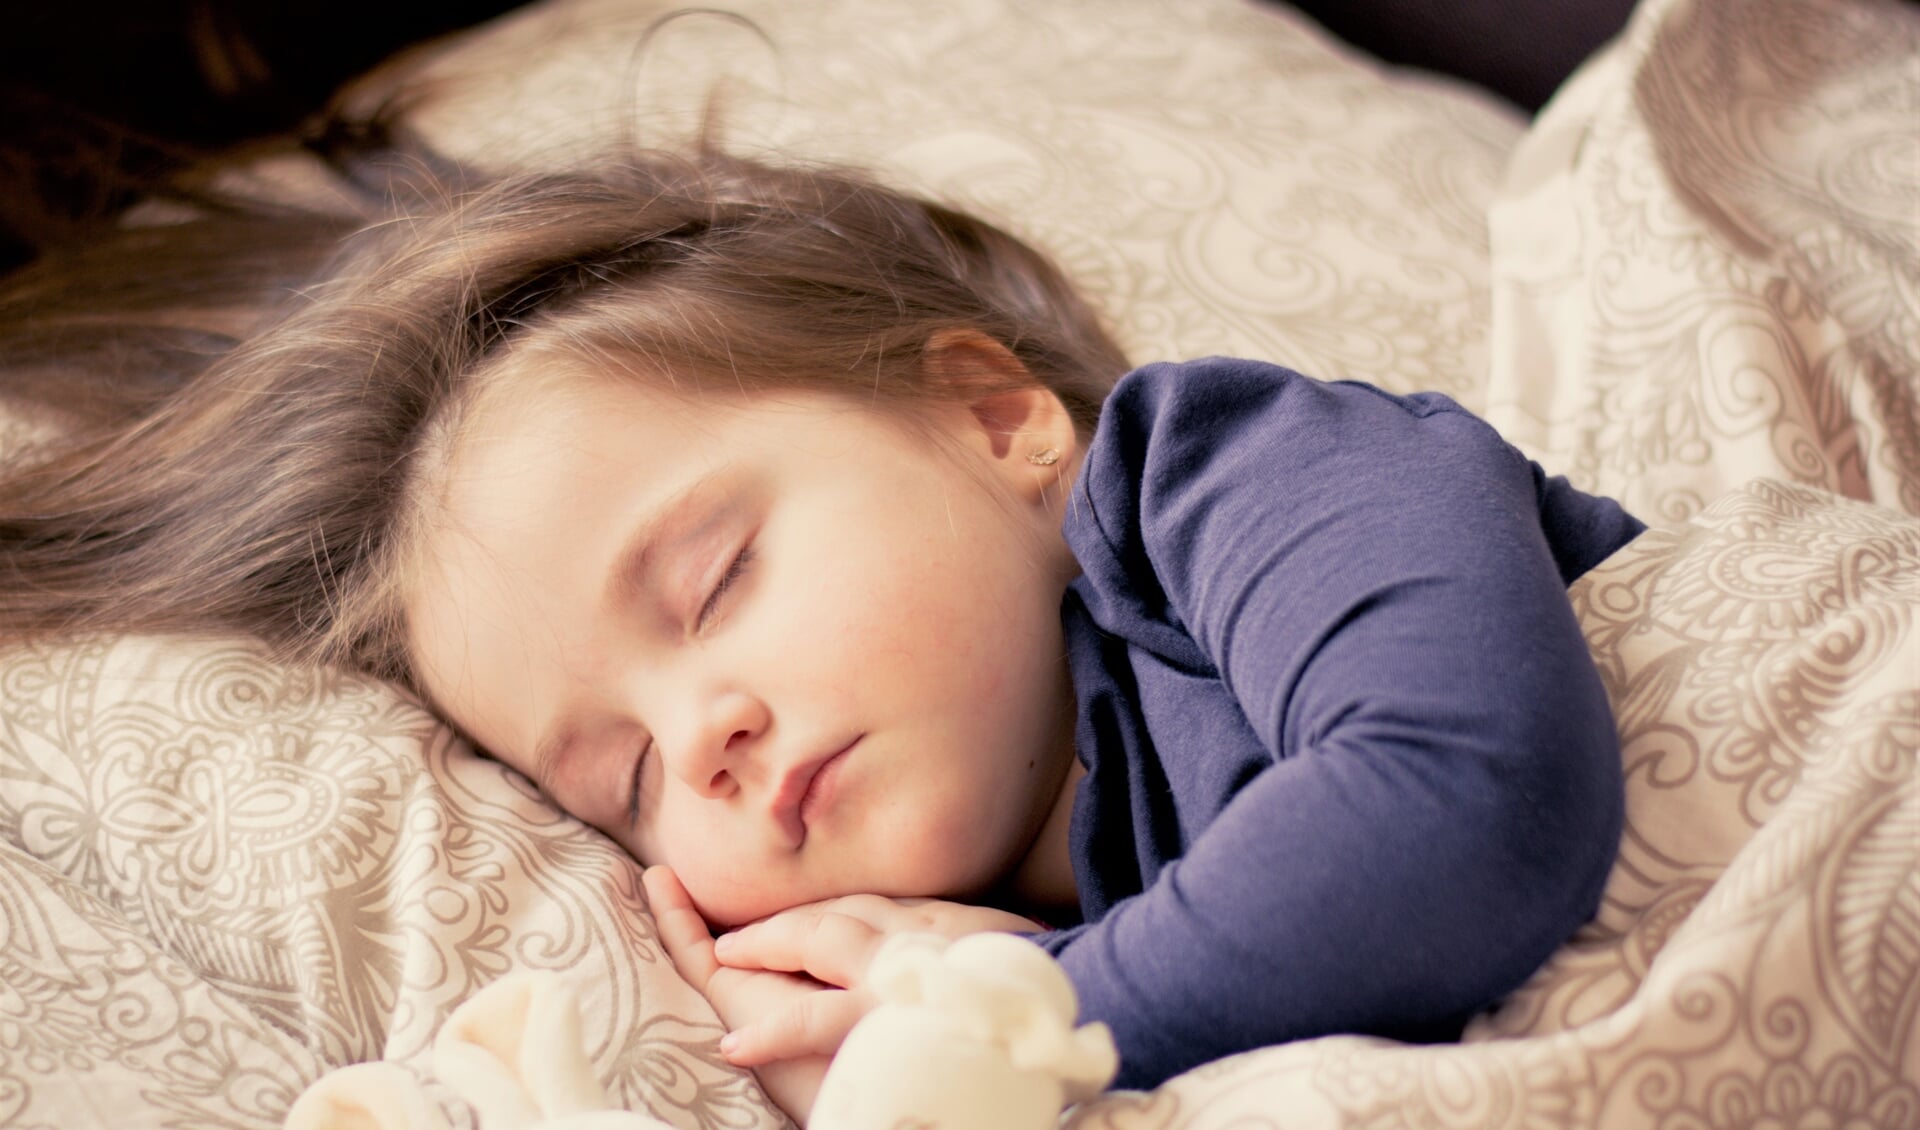 GGD organiseert online bijeenkomst 'Lekker slapen' voor ouders kinderen 1,5 - 12 jaar Al het nieuws Schagen